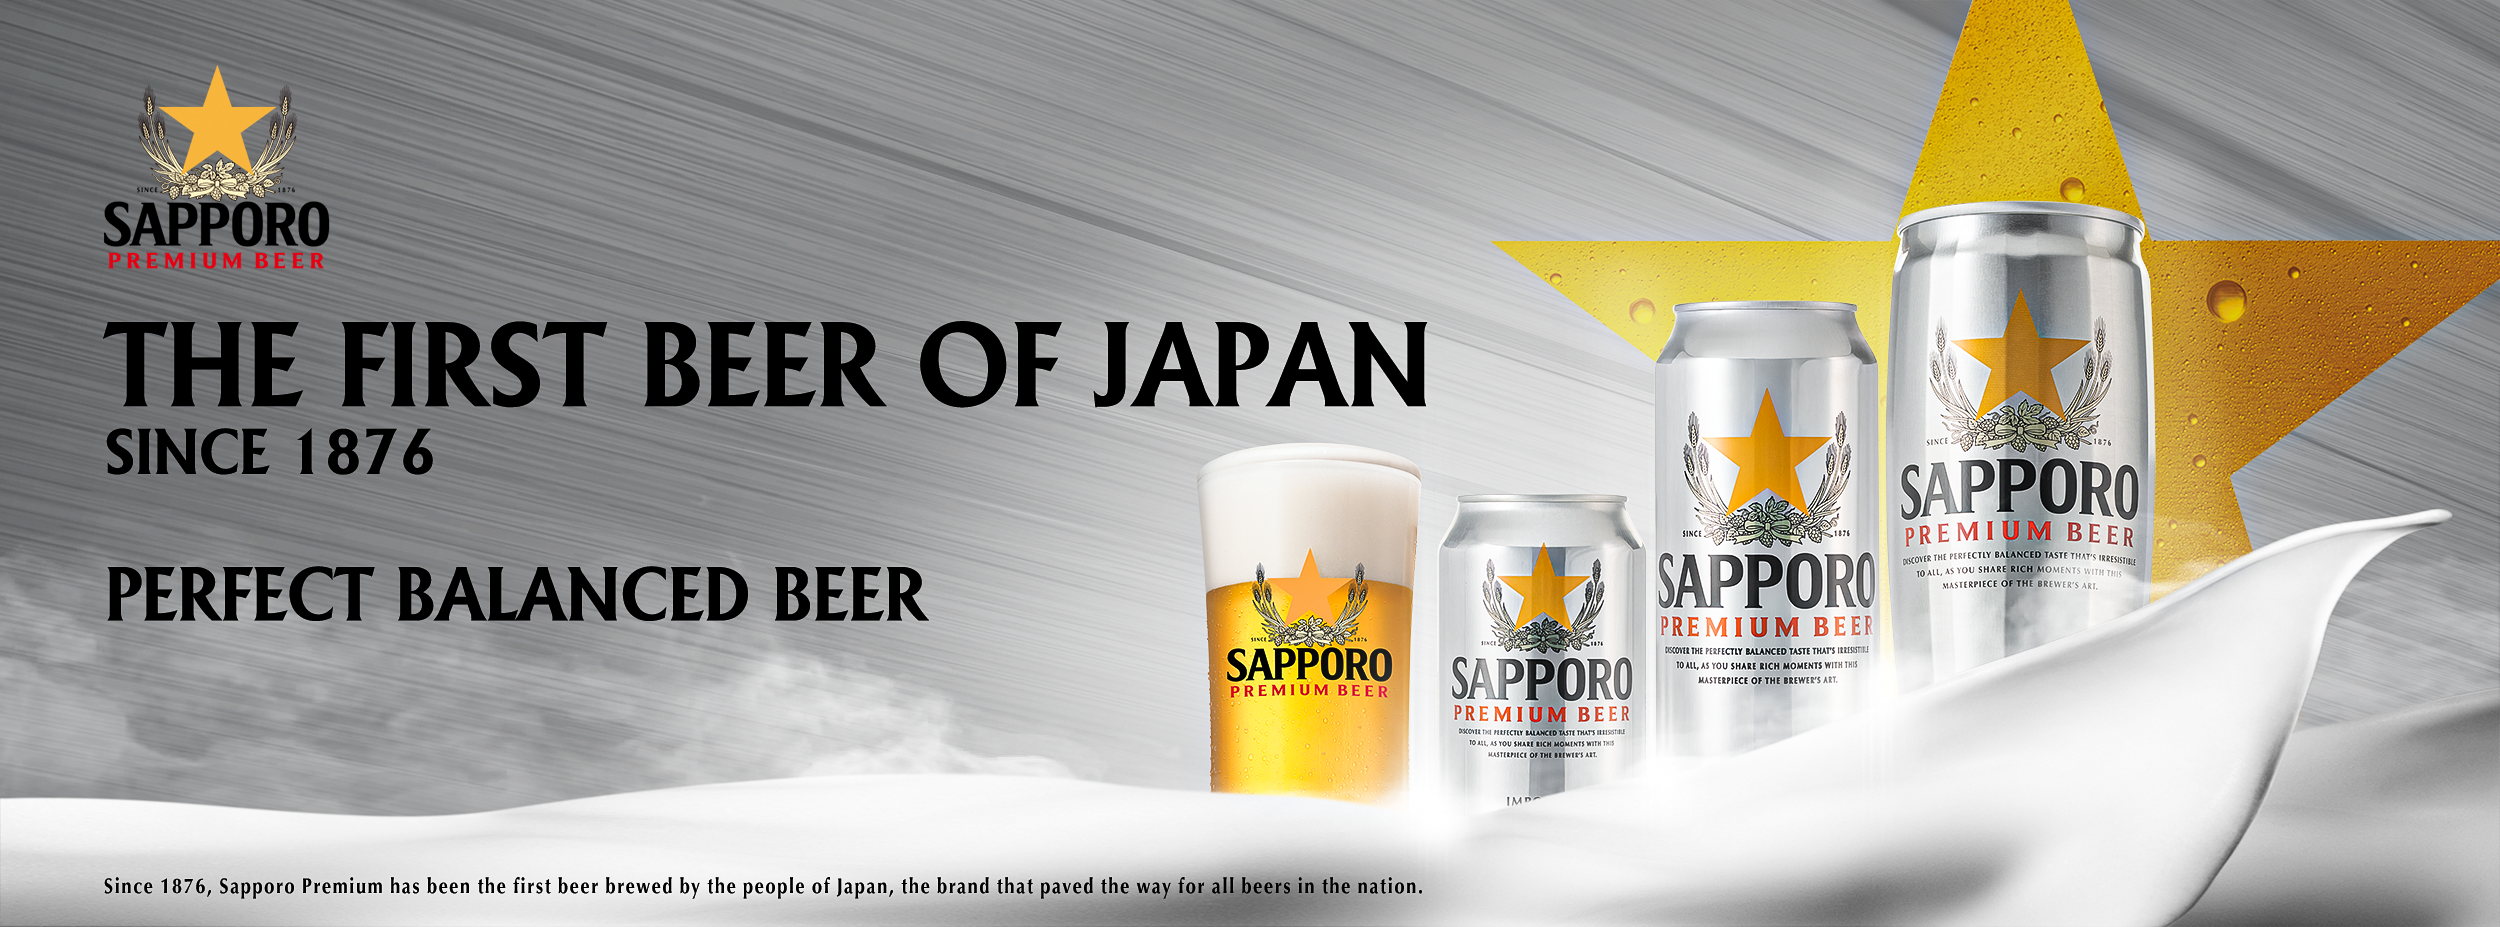 First beer of Japan — Sapporo Premium Beer | Sake Inn